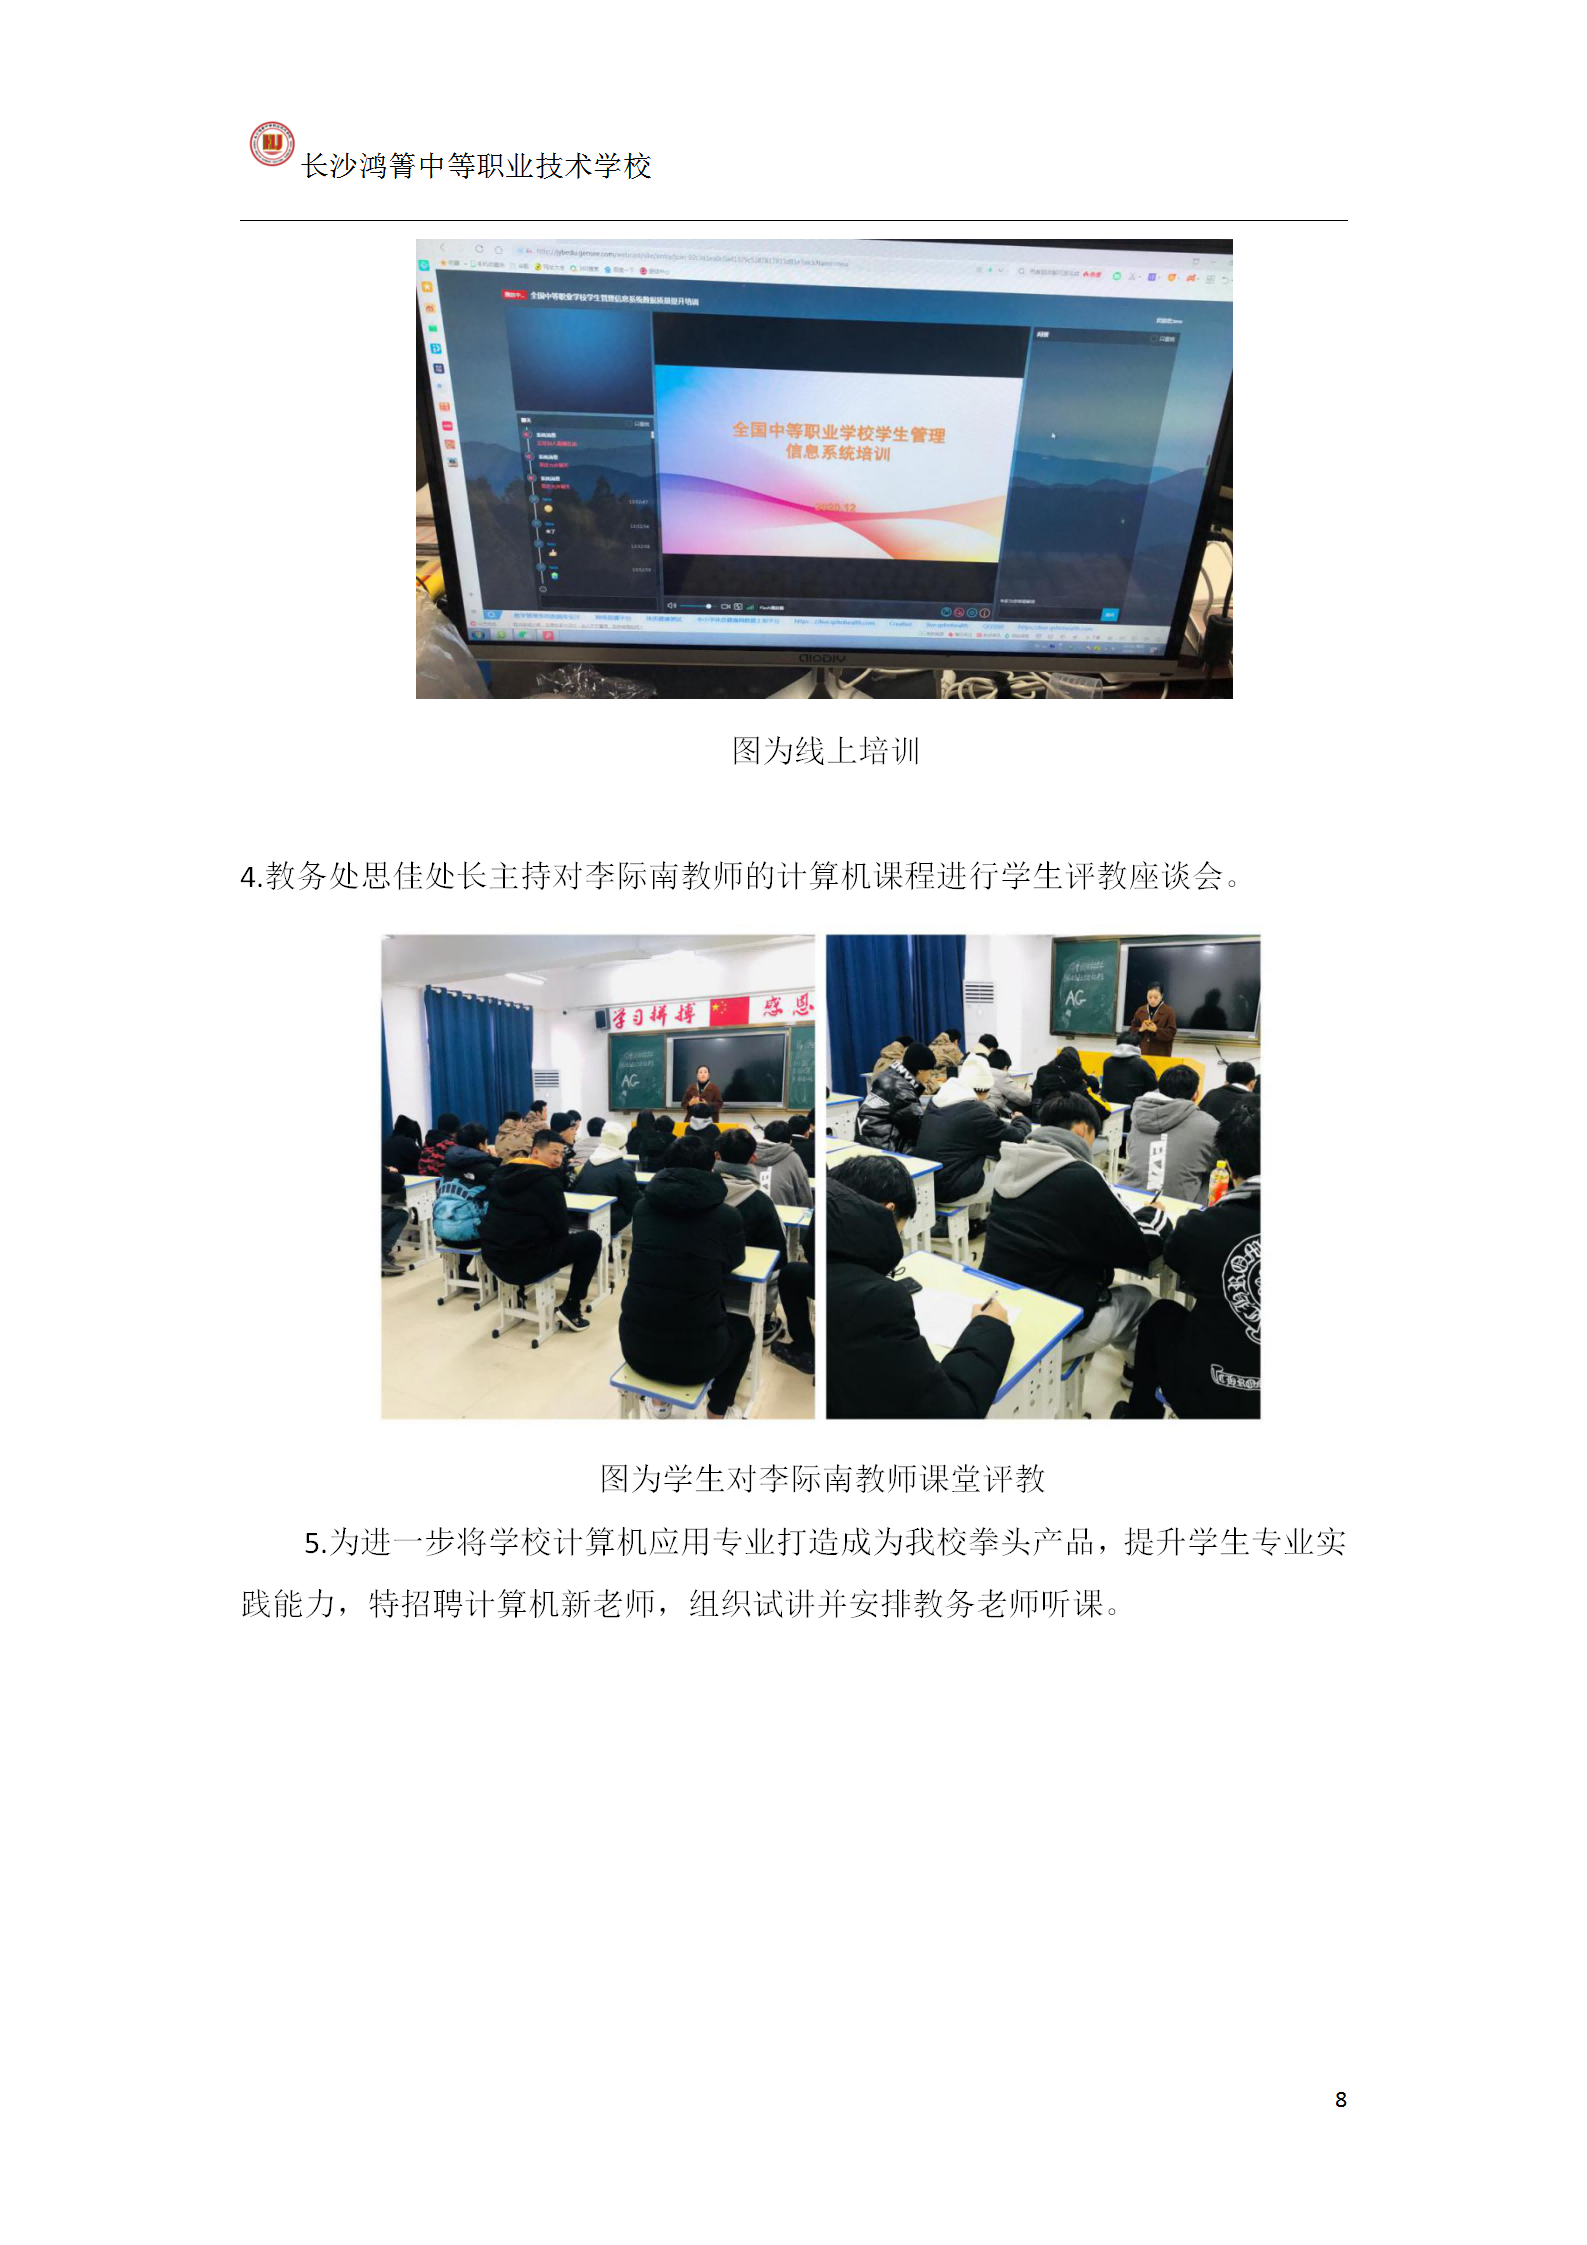 长沙鸿箐中等职业技术学校2020年12月份工作简报